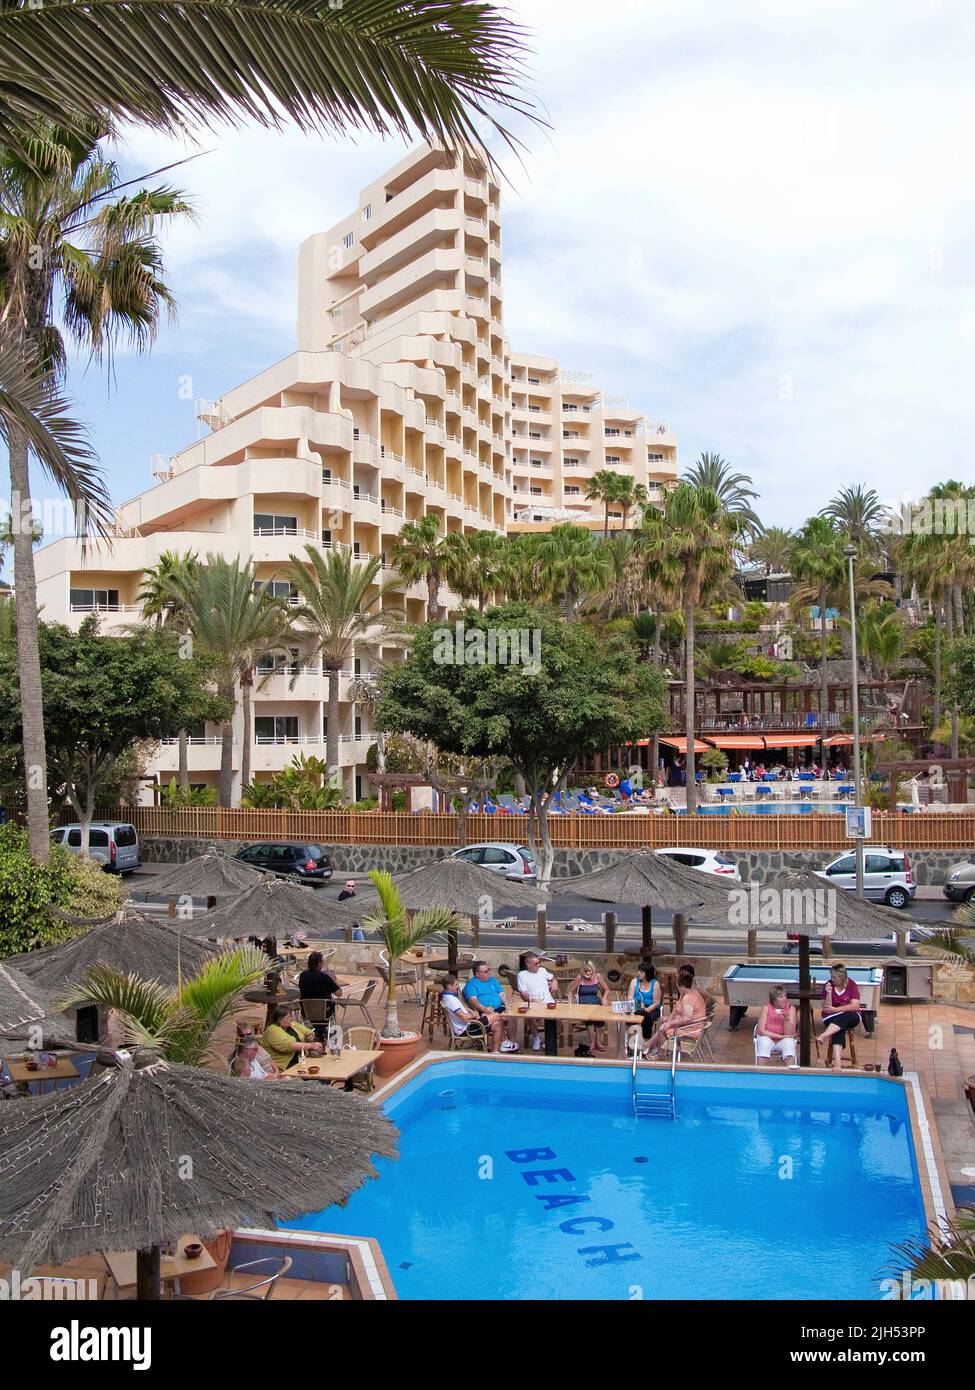 Strandbar mit Pool in einem Hotel in Playa del Ingles, Kanarische Inseln, Spanien, Europa Stockfoto